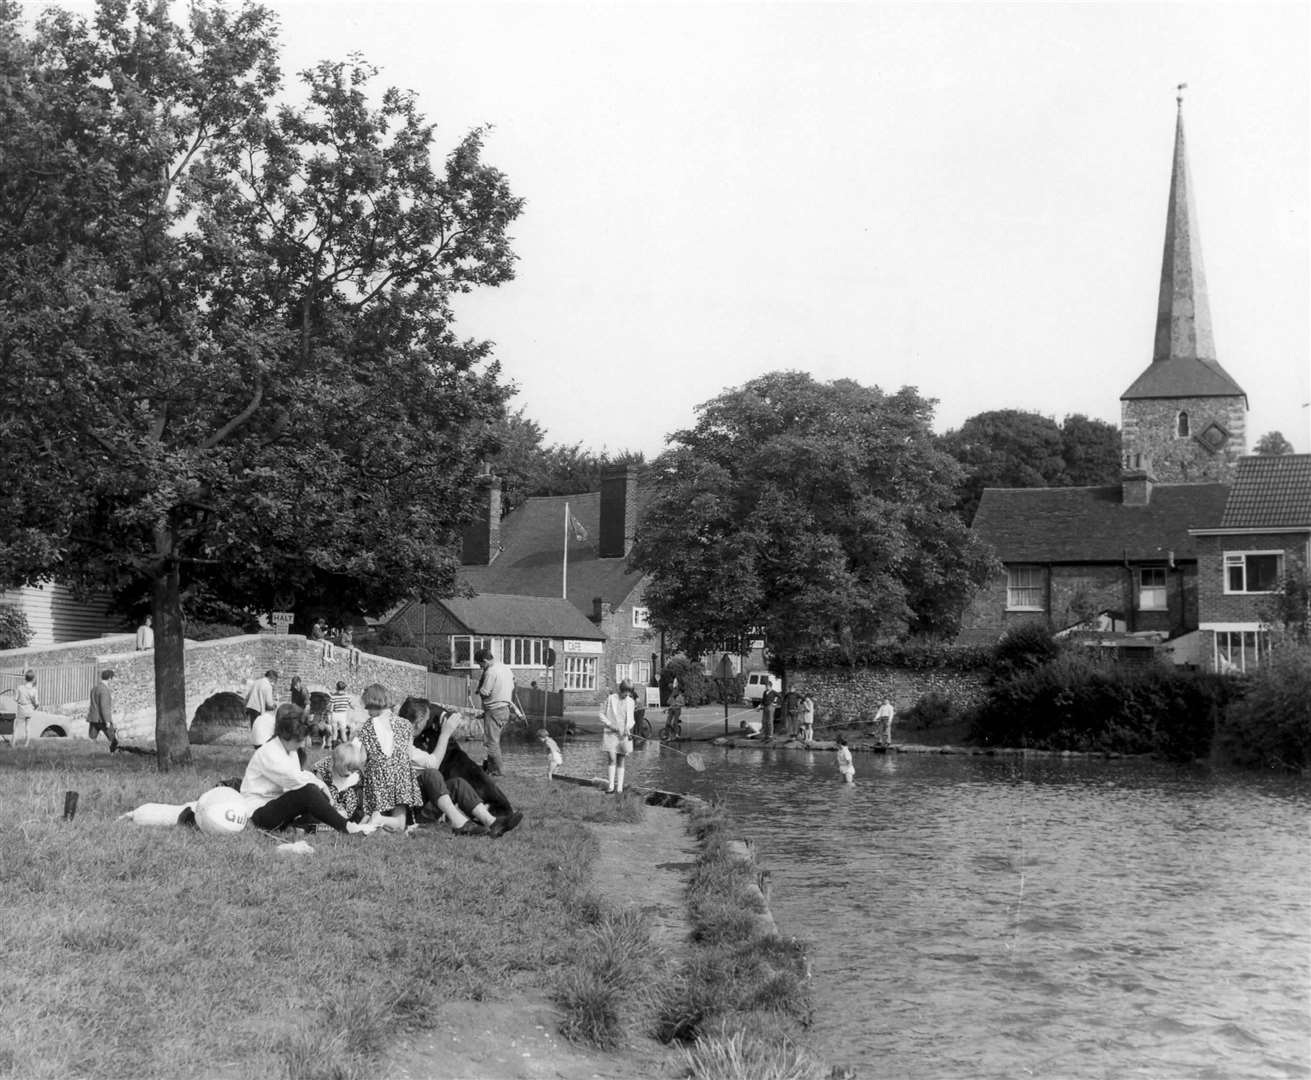 River scene at Eynsford in 1968